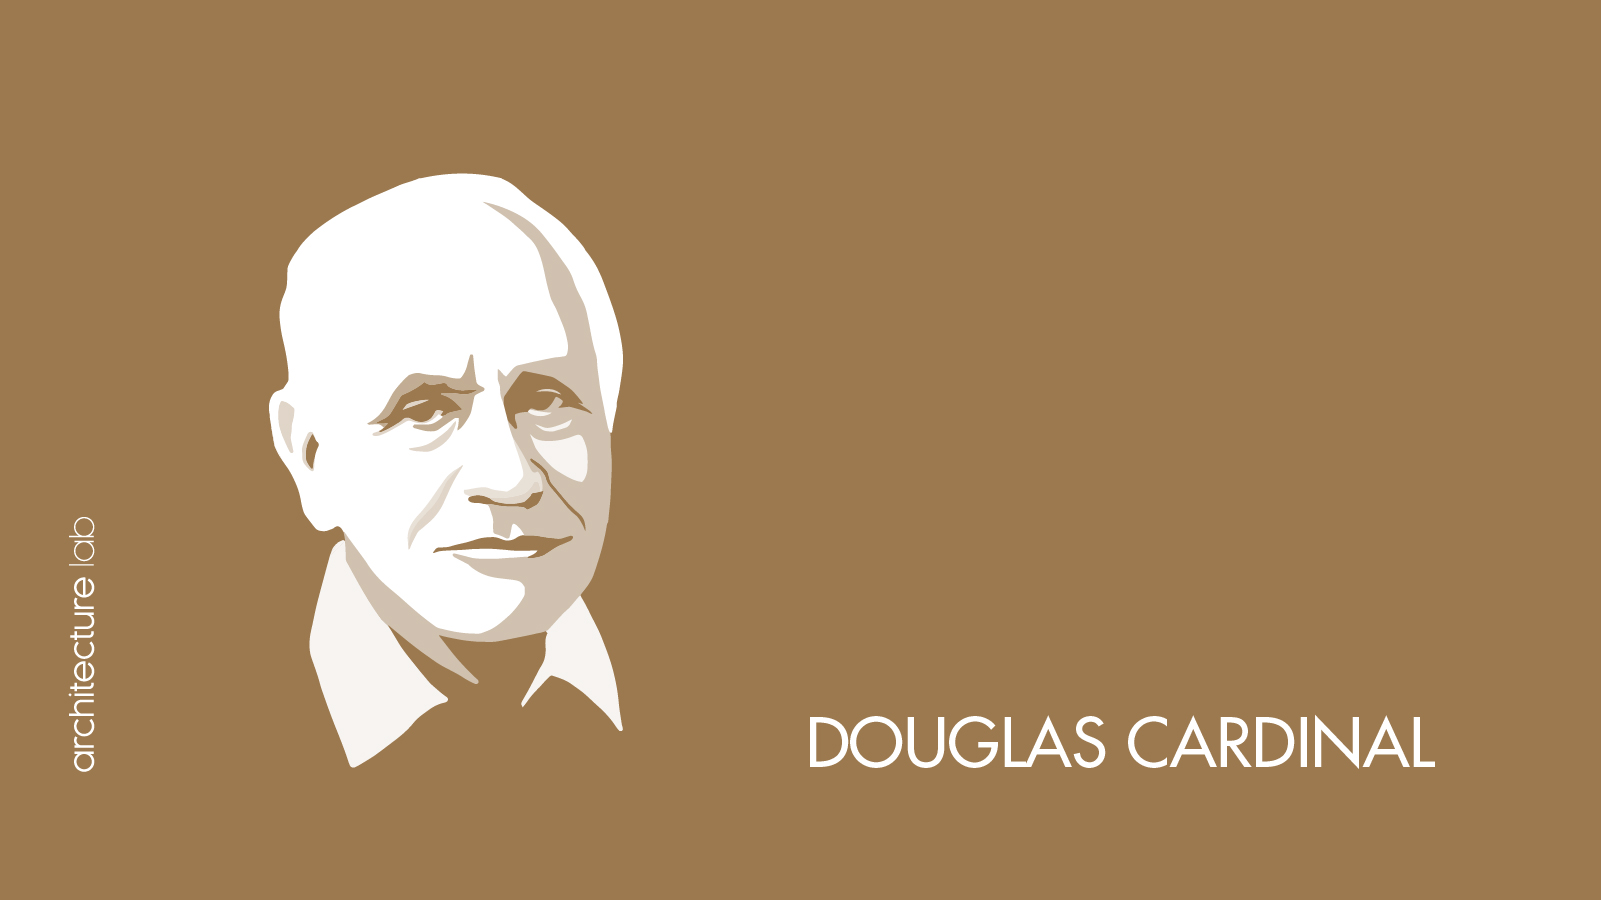 3. Douglas cardinal